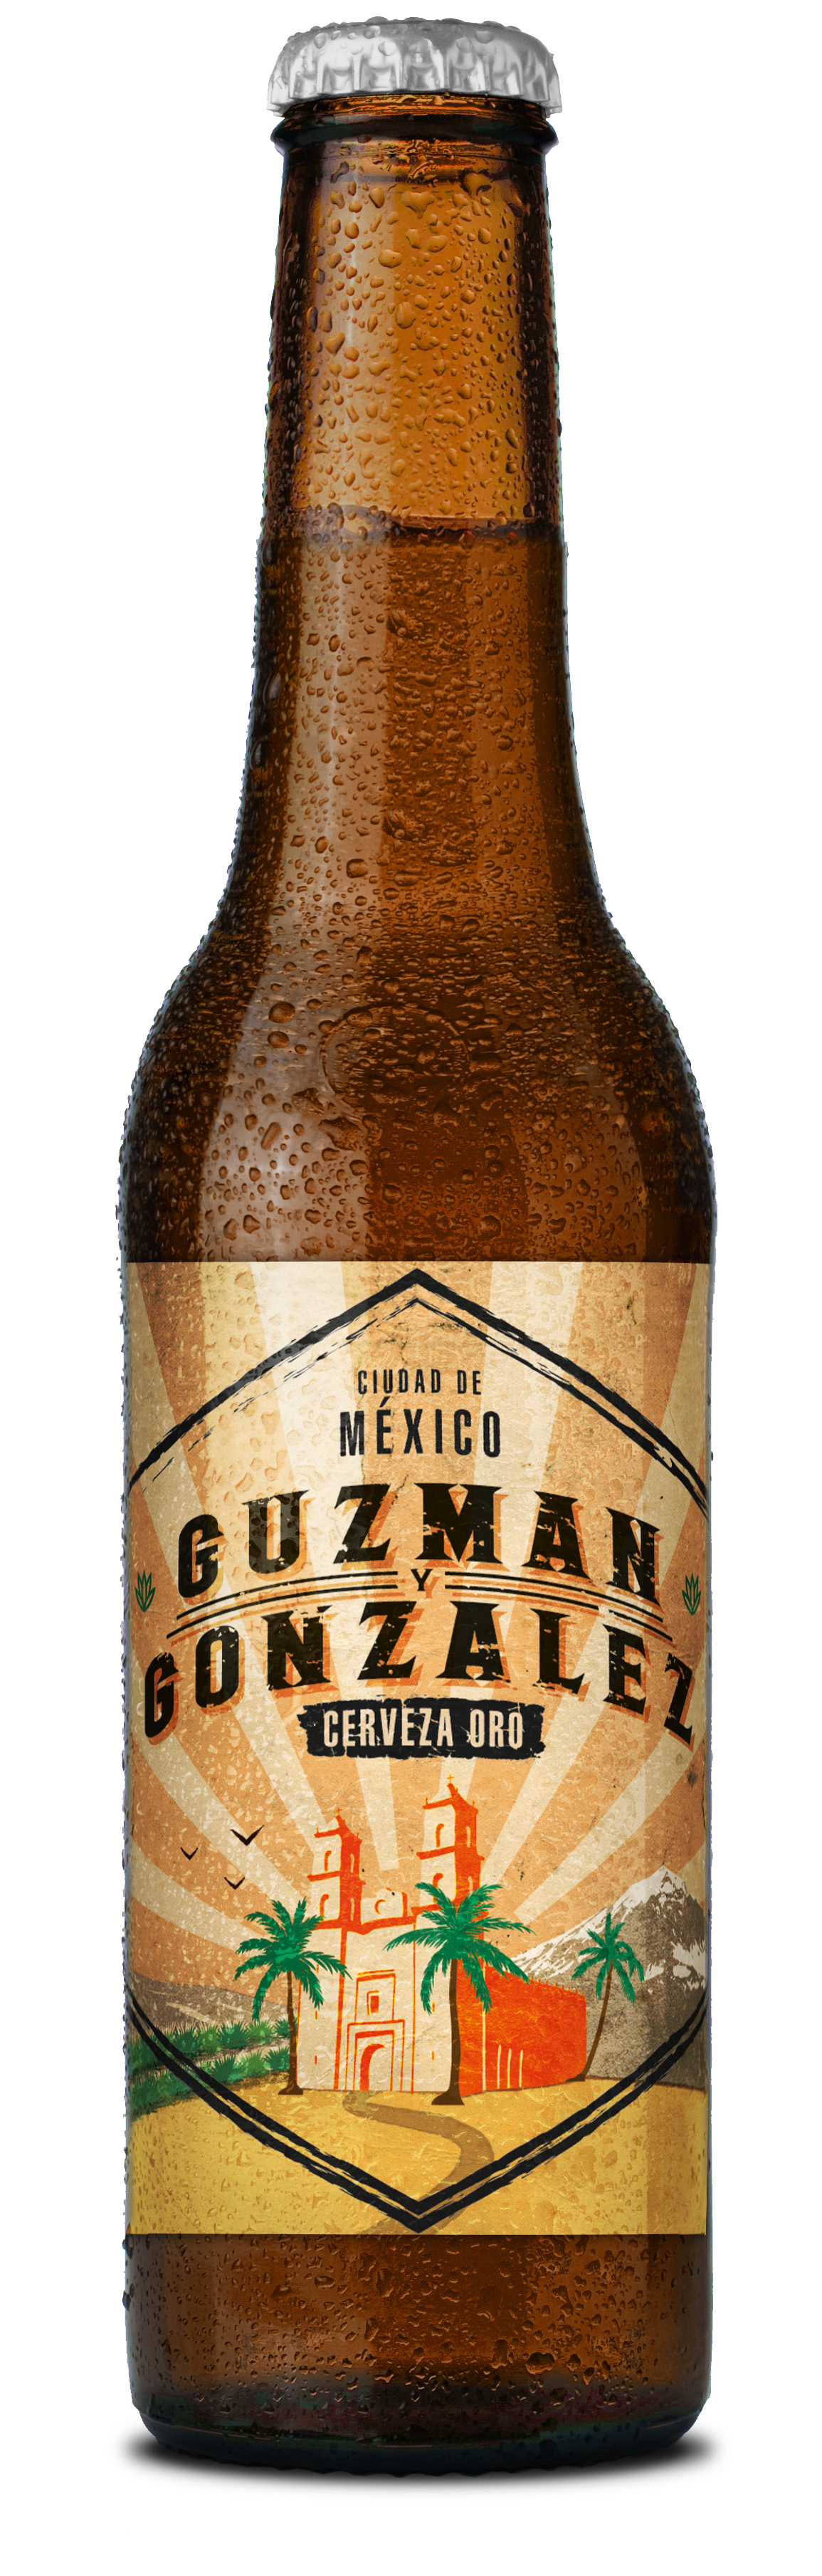 Guzman y Gonzalez Cerveza Oro